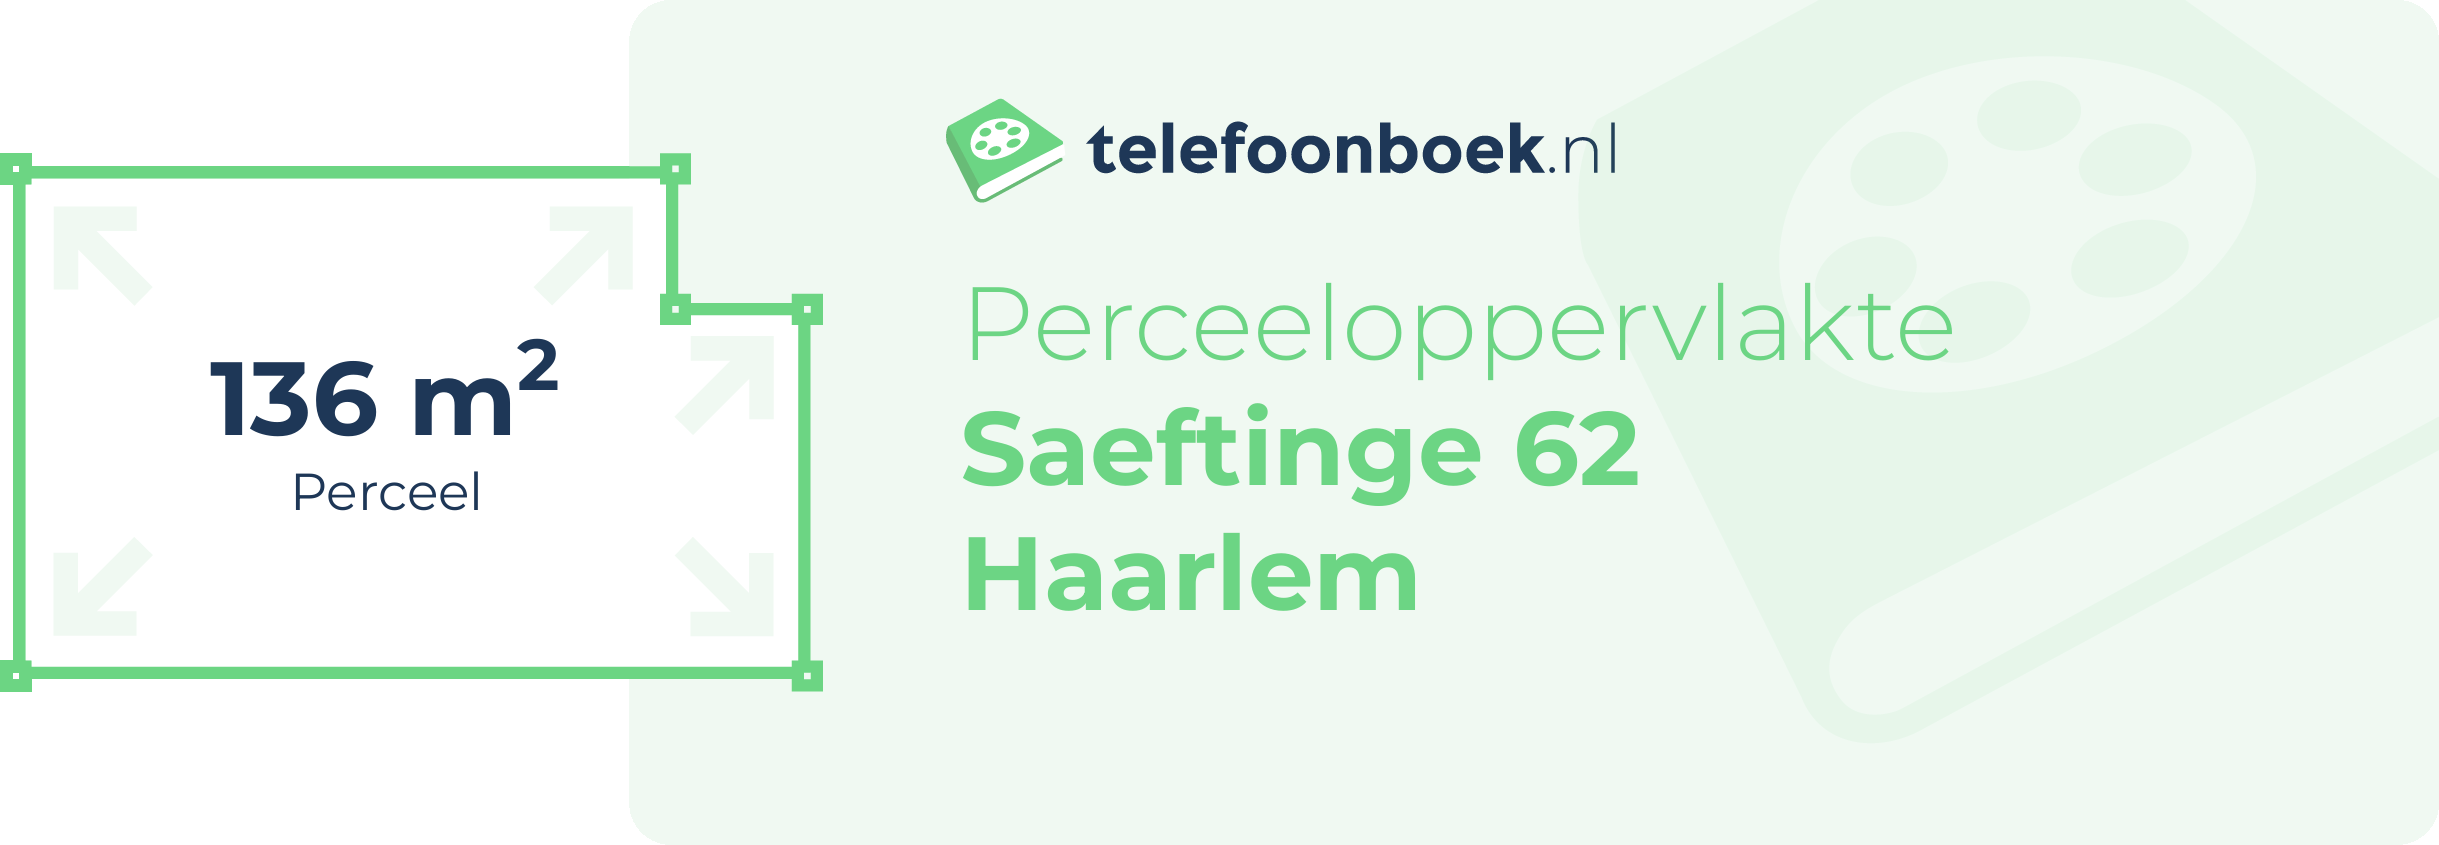 Perceeloppervlakte Saeftinge 62 Haarlem